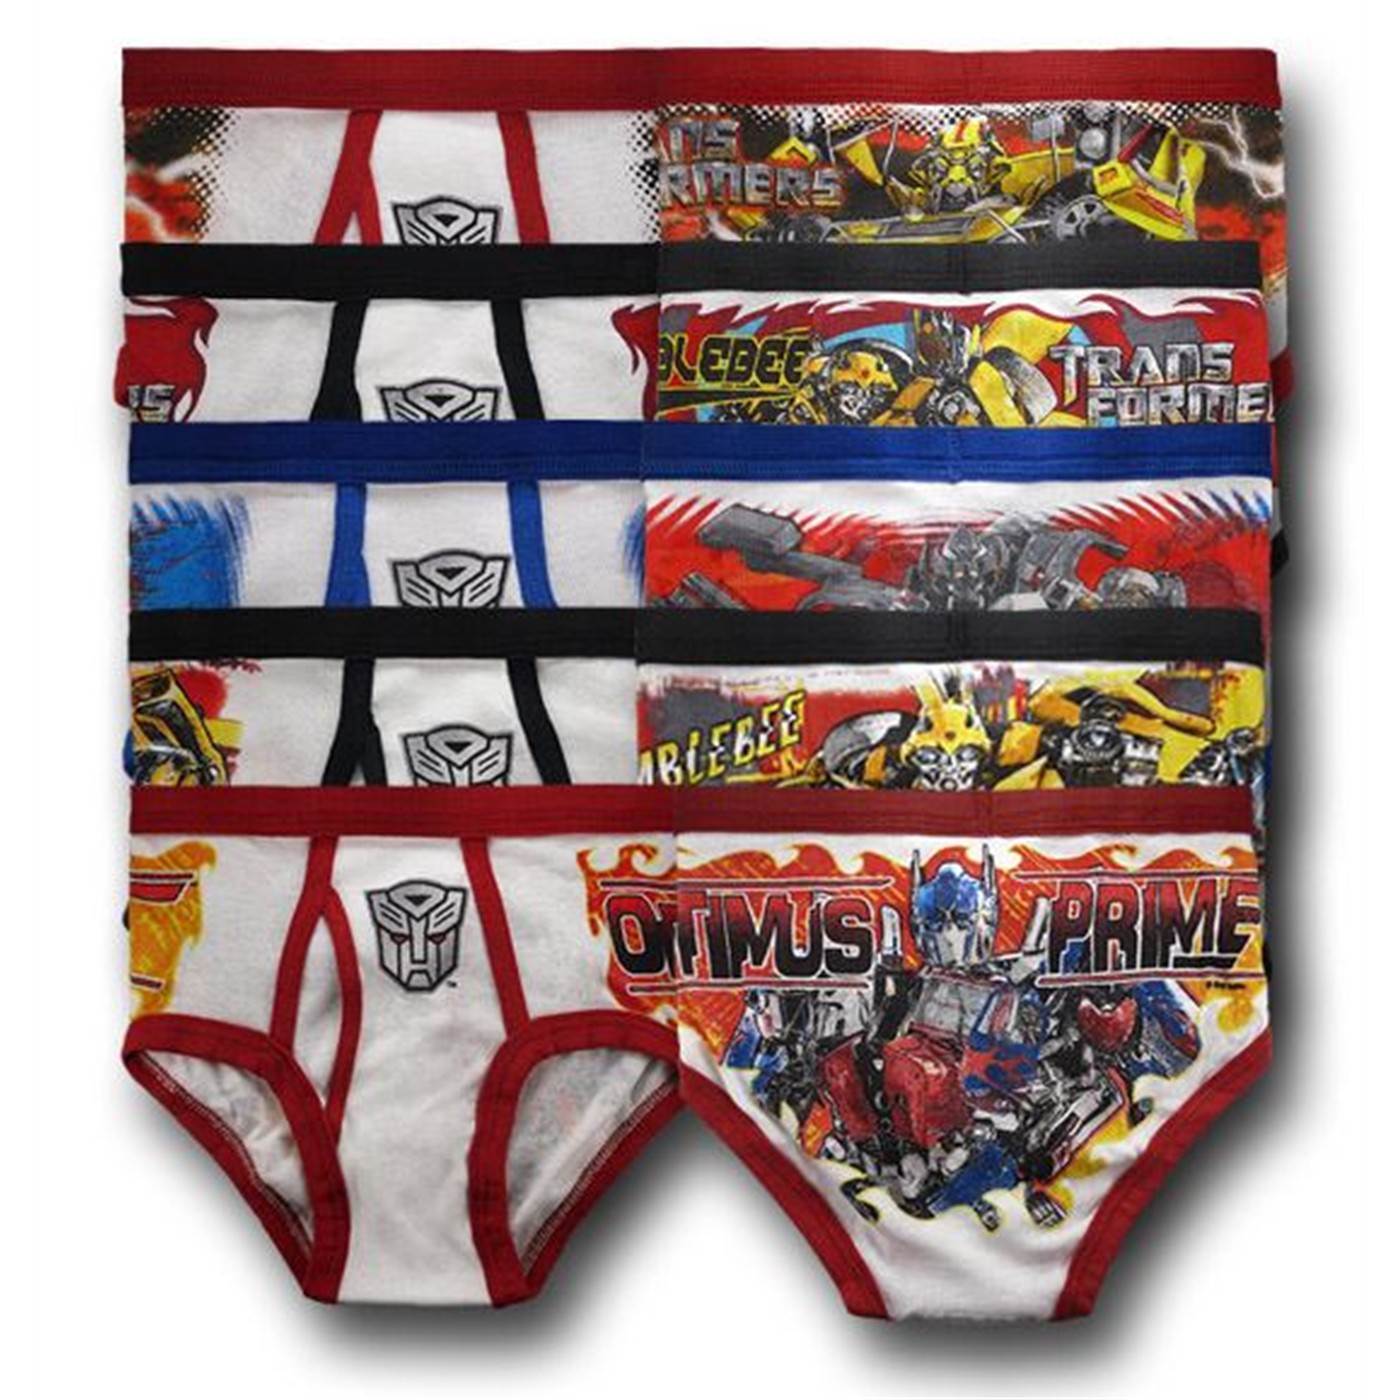 Briefs 6-Pack Size 6X Jellifish Kids Transformers Boys Underwear